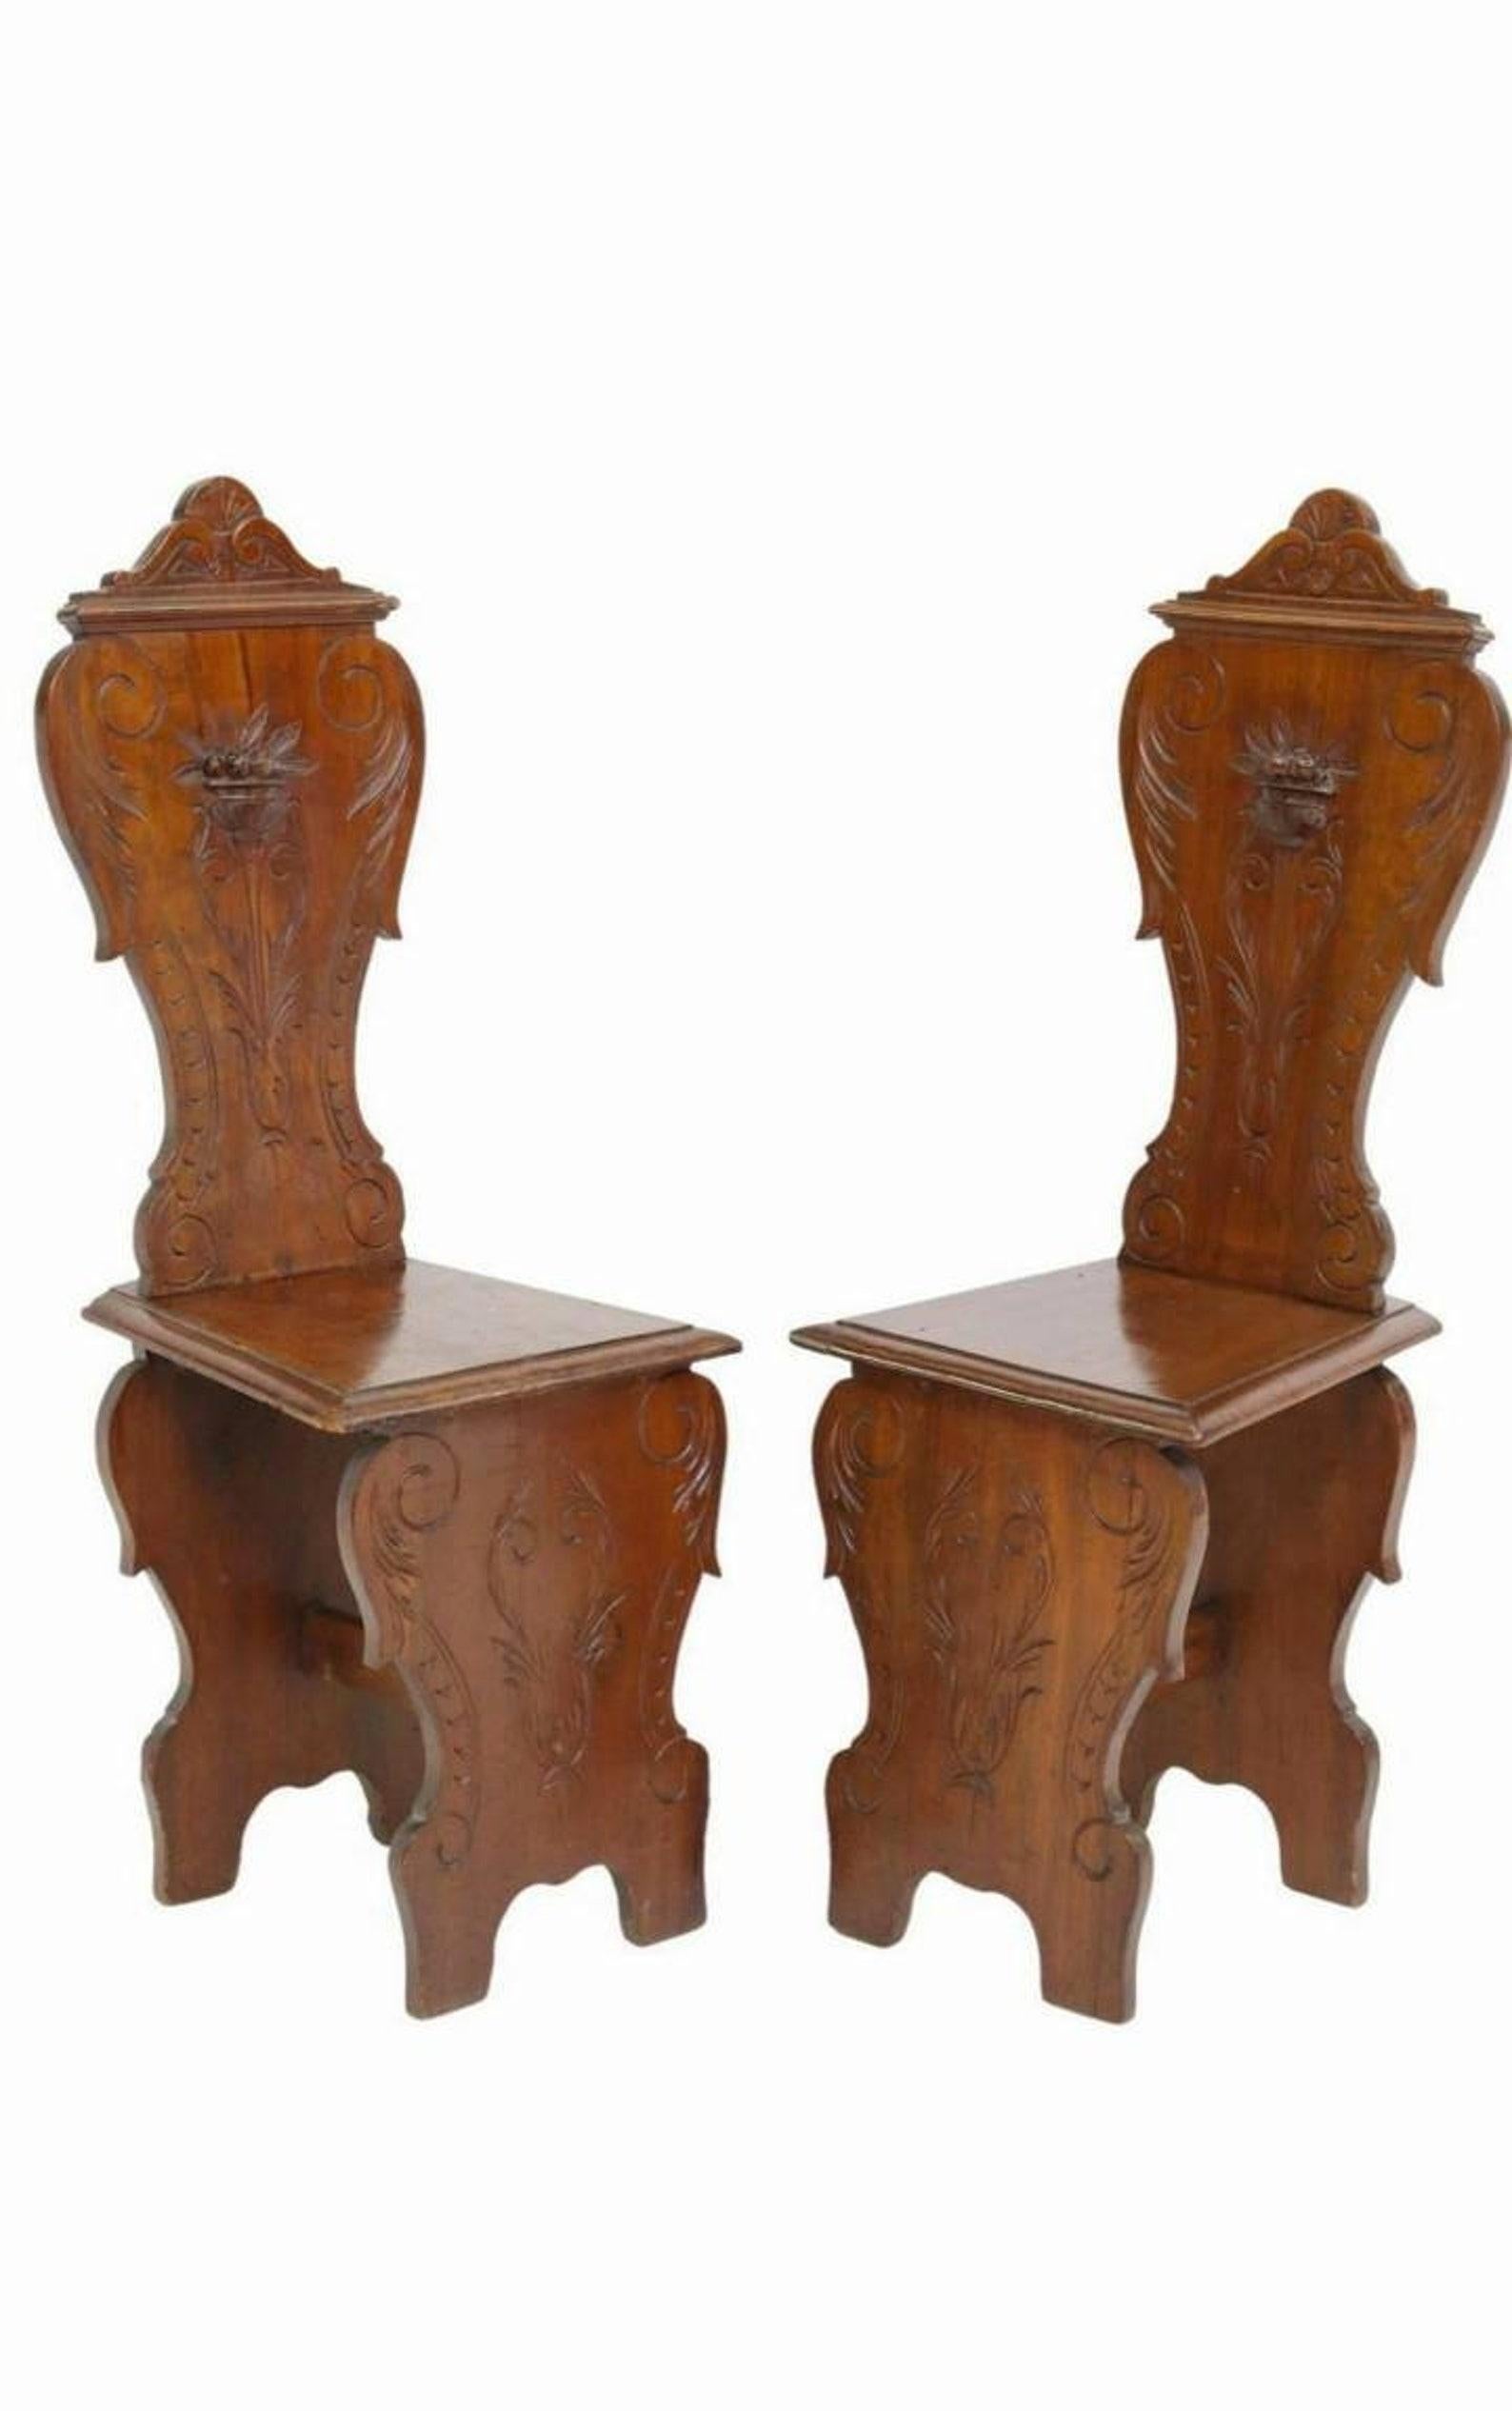 Paire de chaises de salon sgabello en noyer sculpté à la main, datant d'environ 1830, de style Renaissance italienne.

Fabriqué à la main en Italie provinciale, très probablement dans la région toscane de l'Italie centrale, dans la première moitié